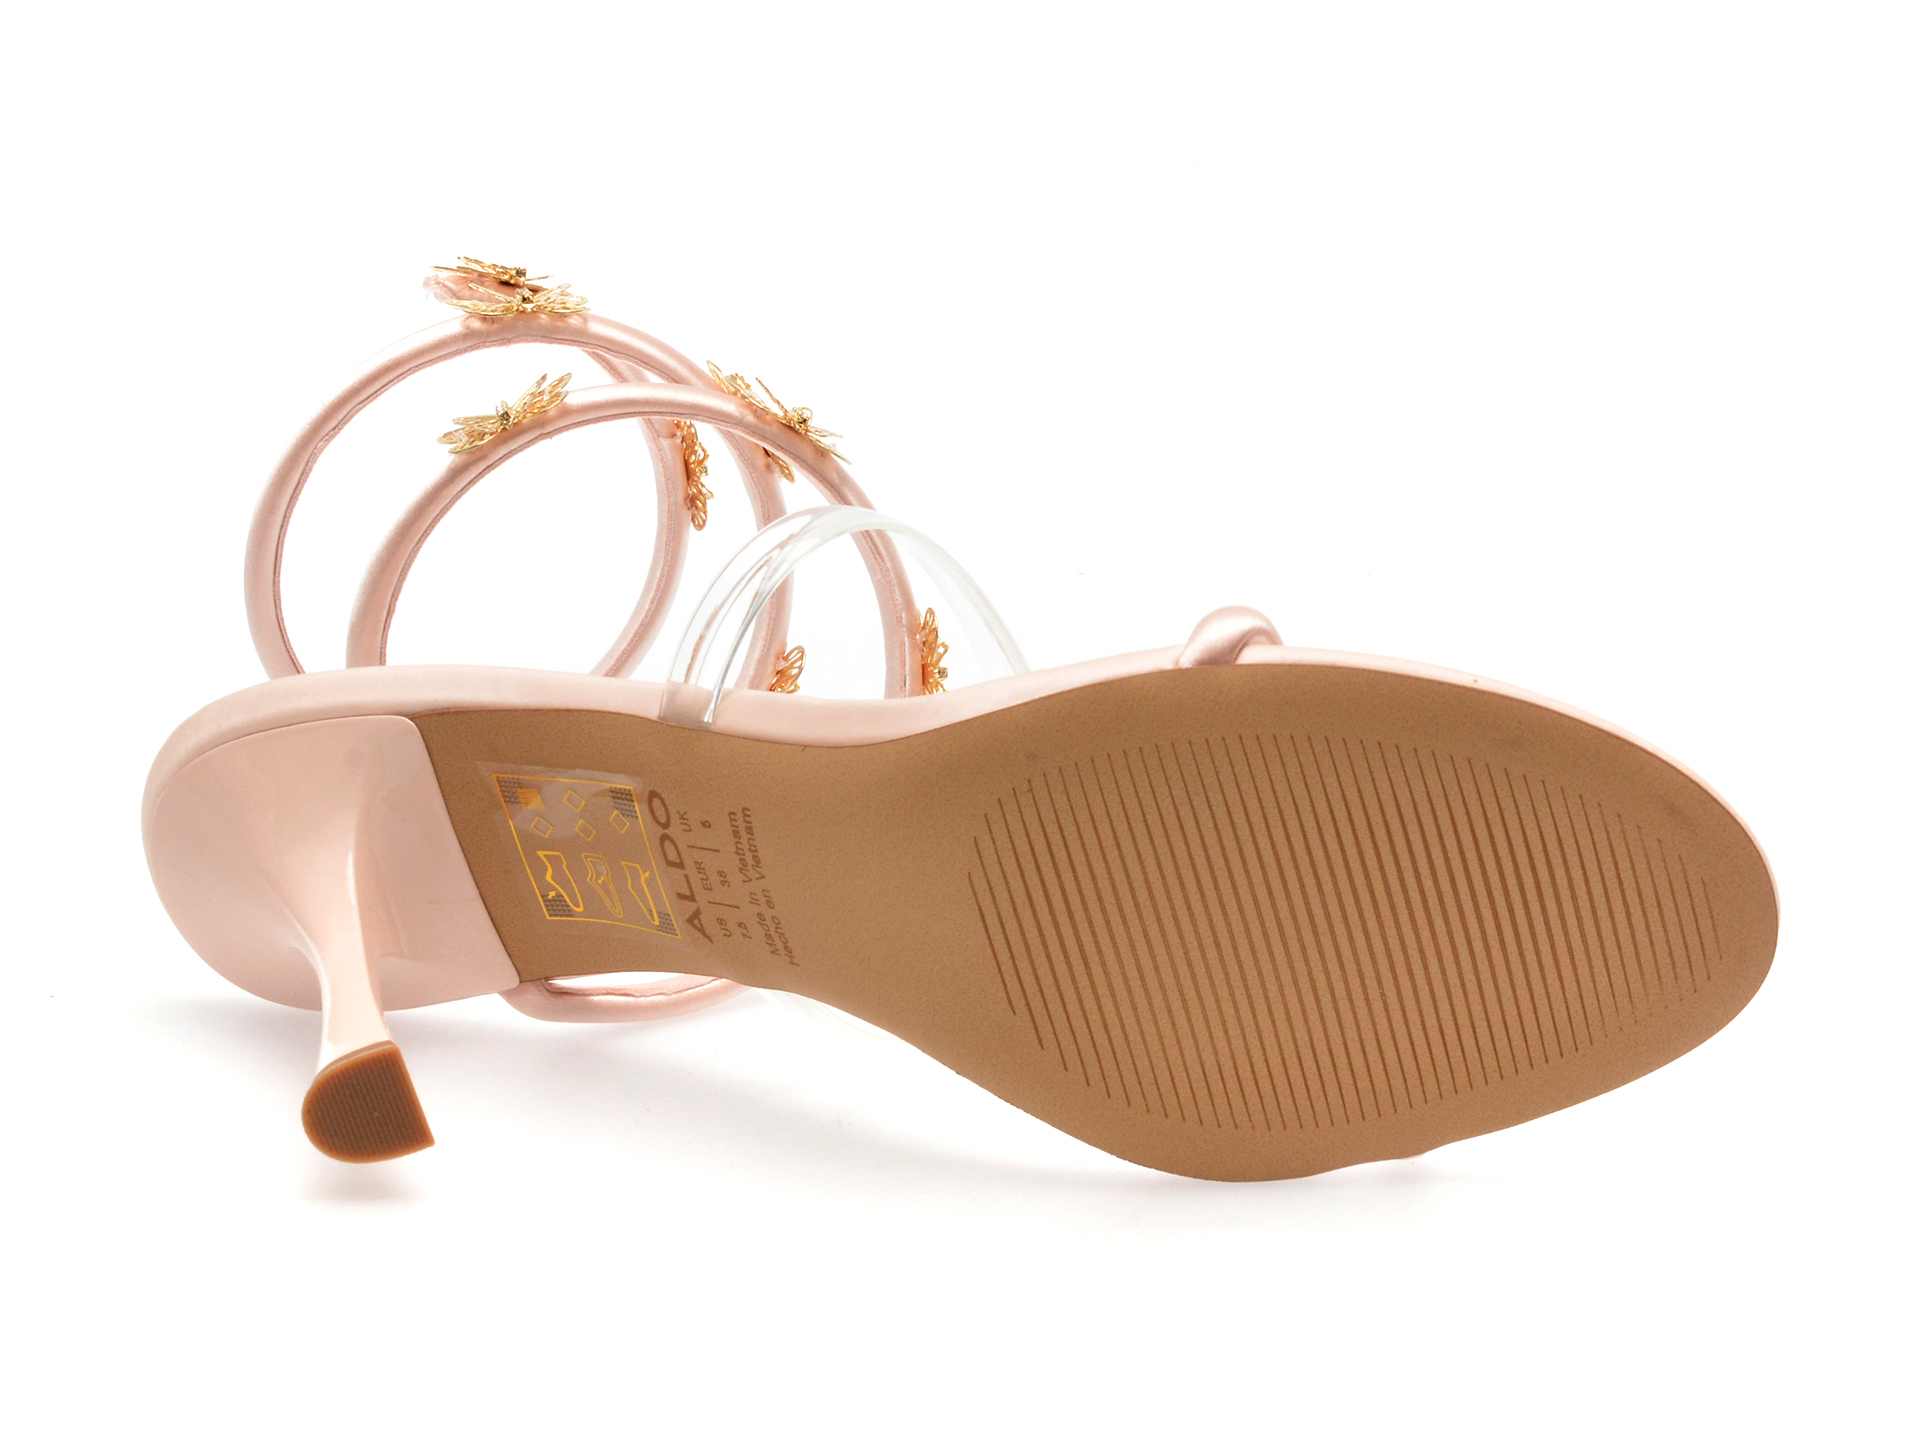 Sandale ALDO roz, PIROUETTE680, din piele ecologica